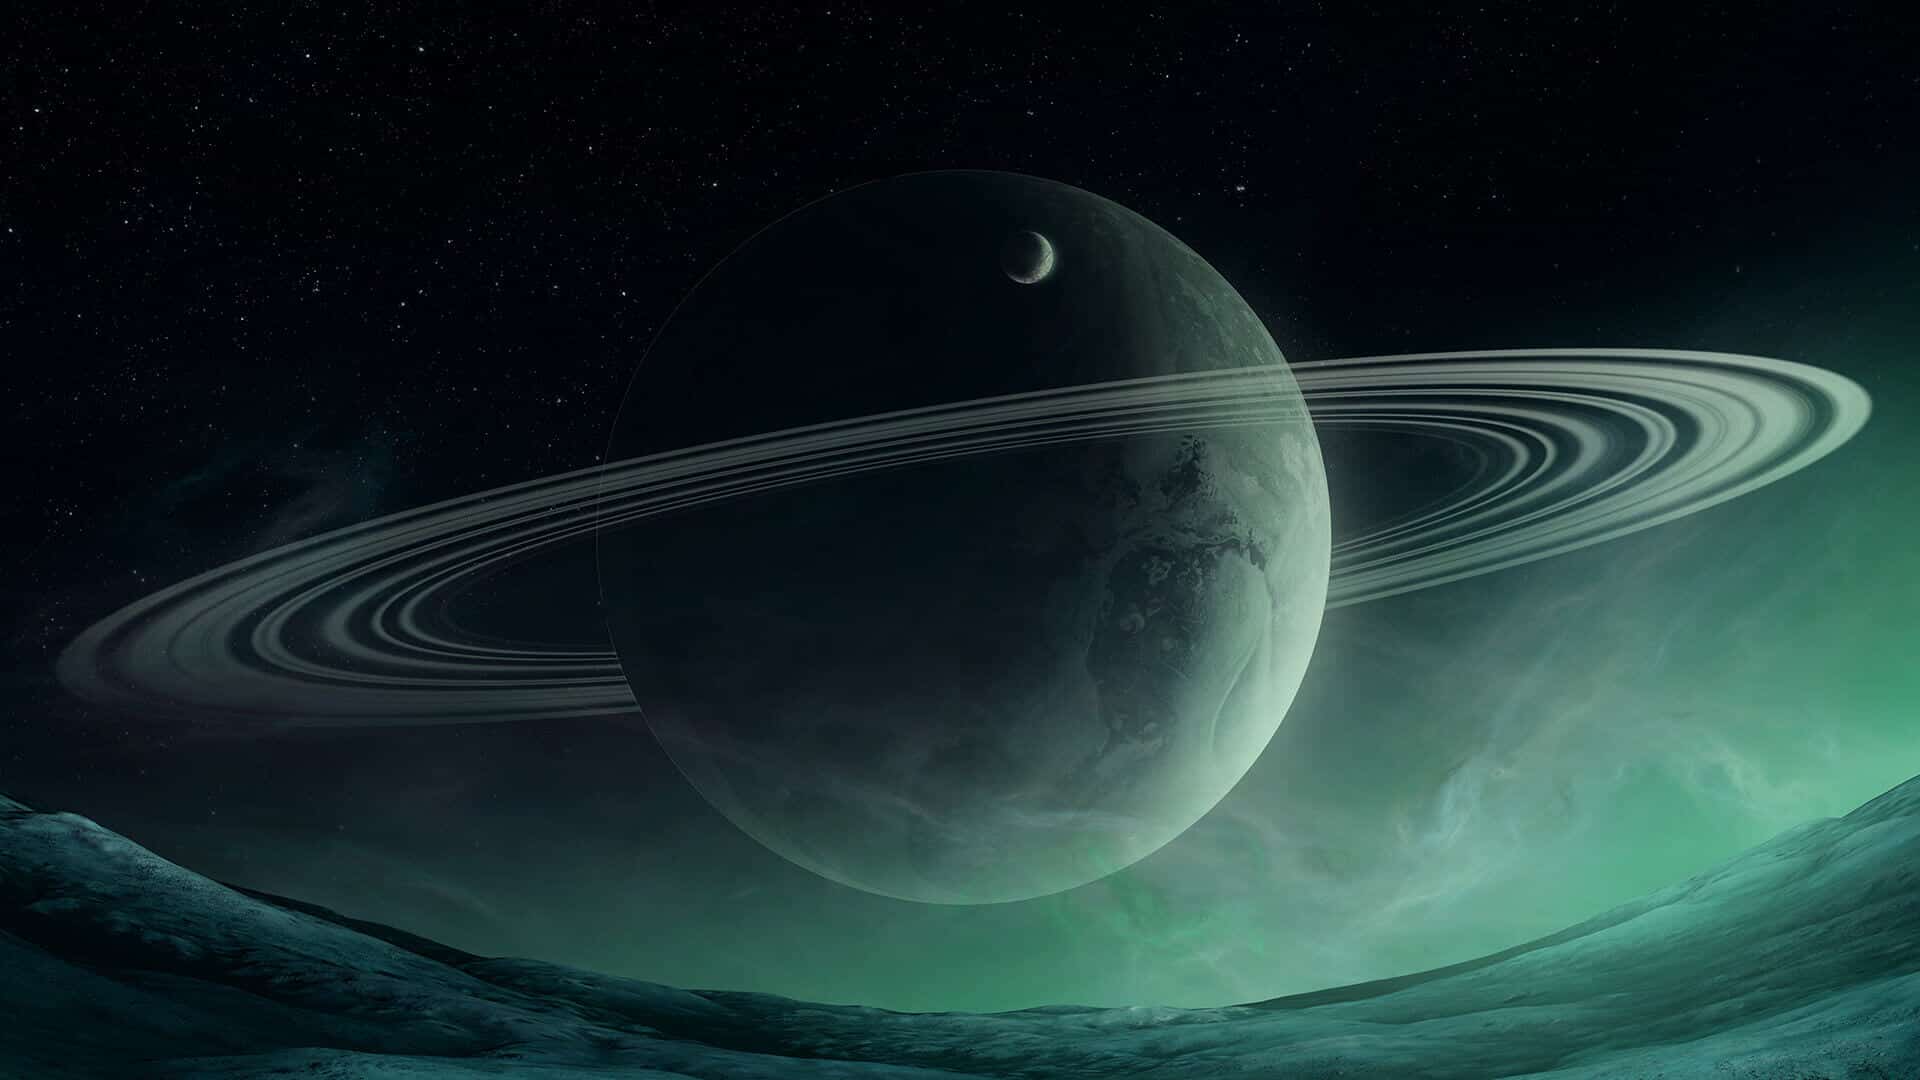 Saturn retrograde in Aquarius